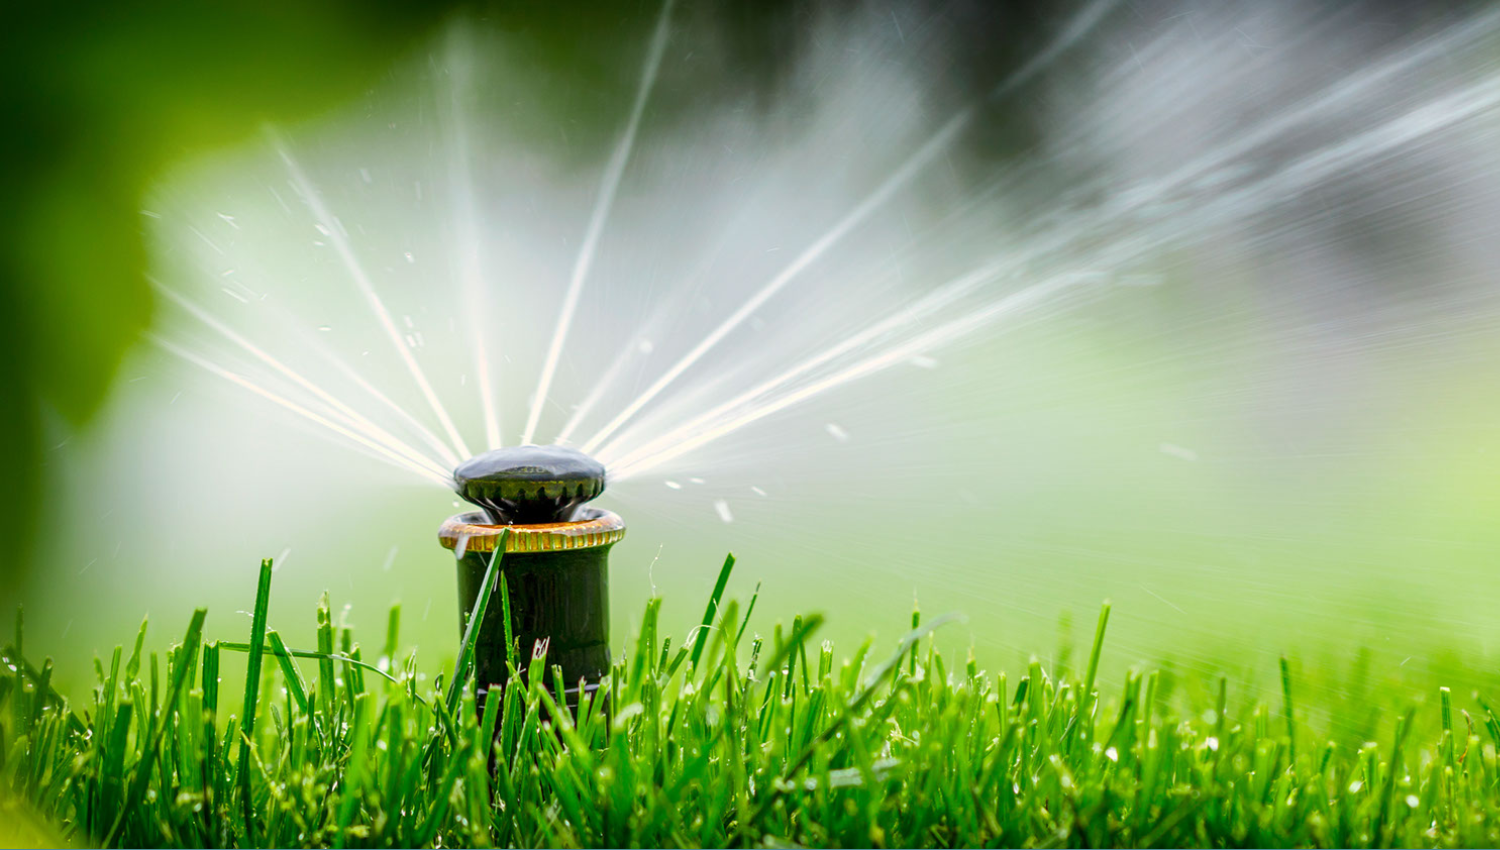 Irrigation System Sprinkler